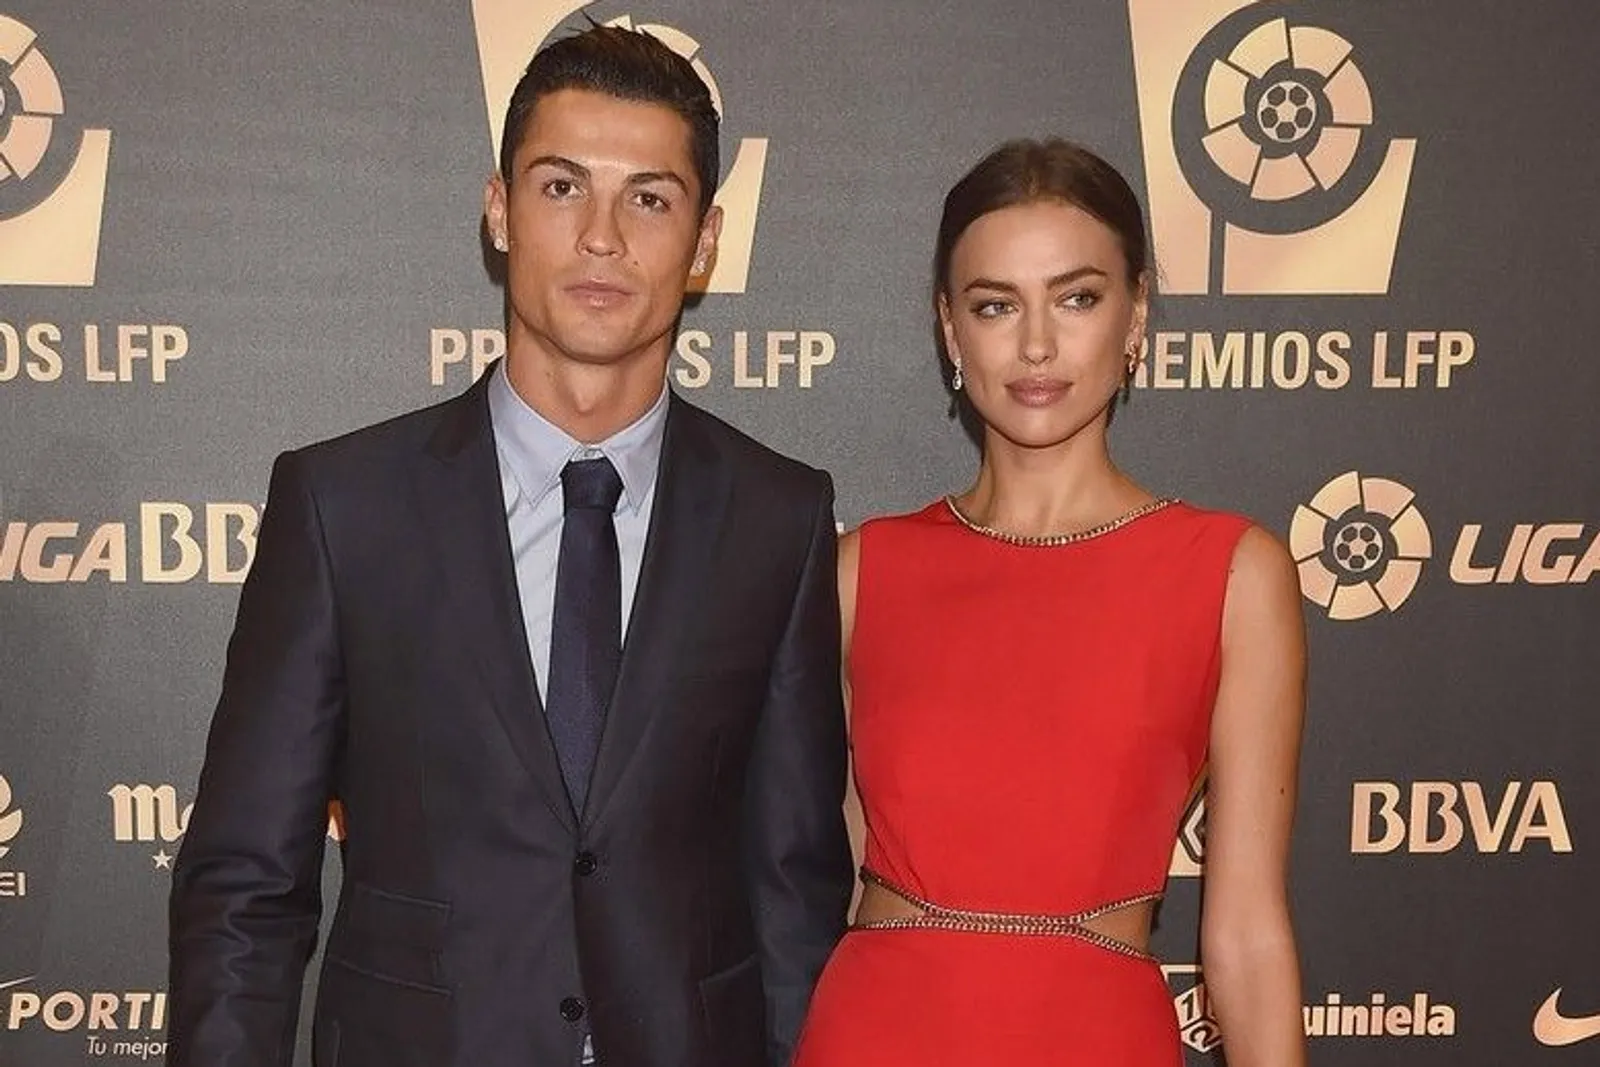 Deretan Gaya Cewek Seksi yang Pernah Dekat dengan Cristiano Ronaldo